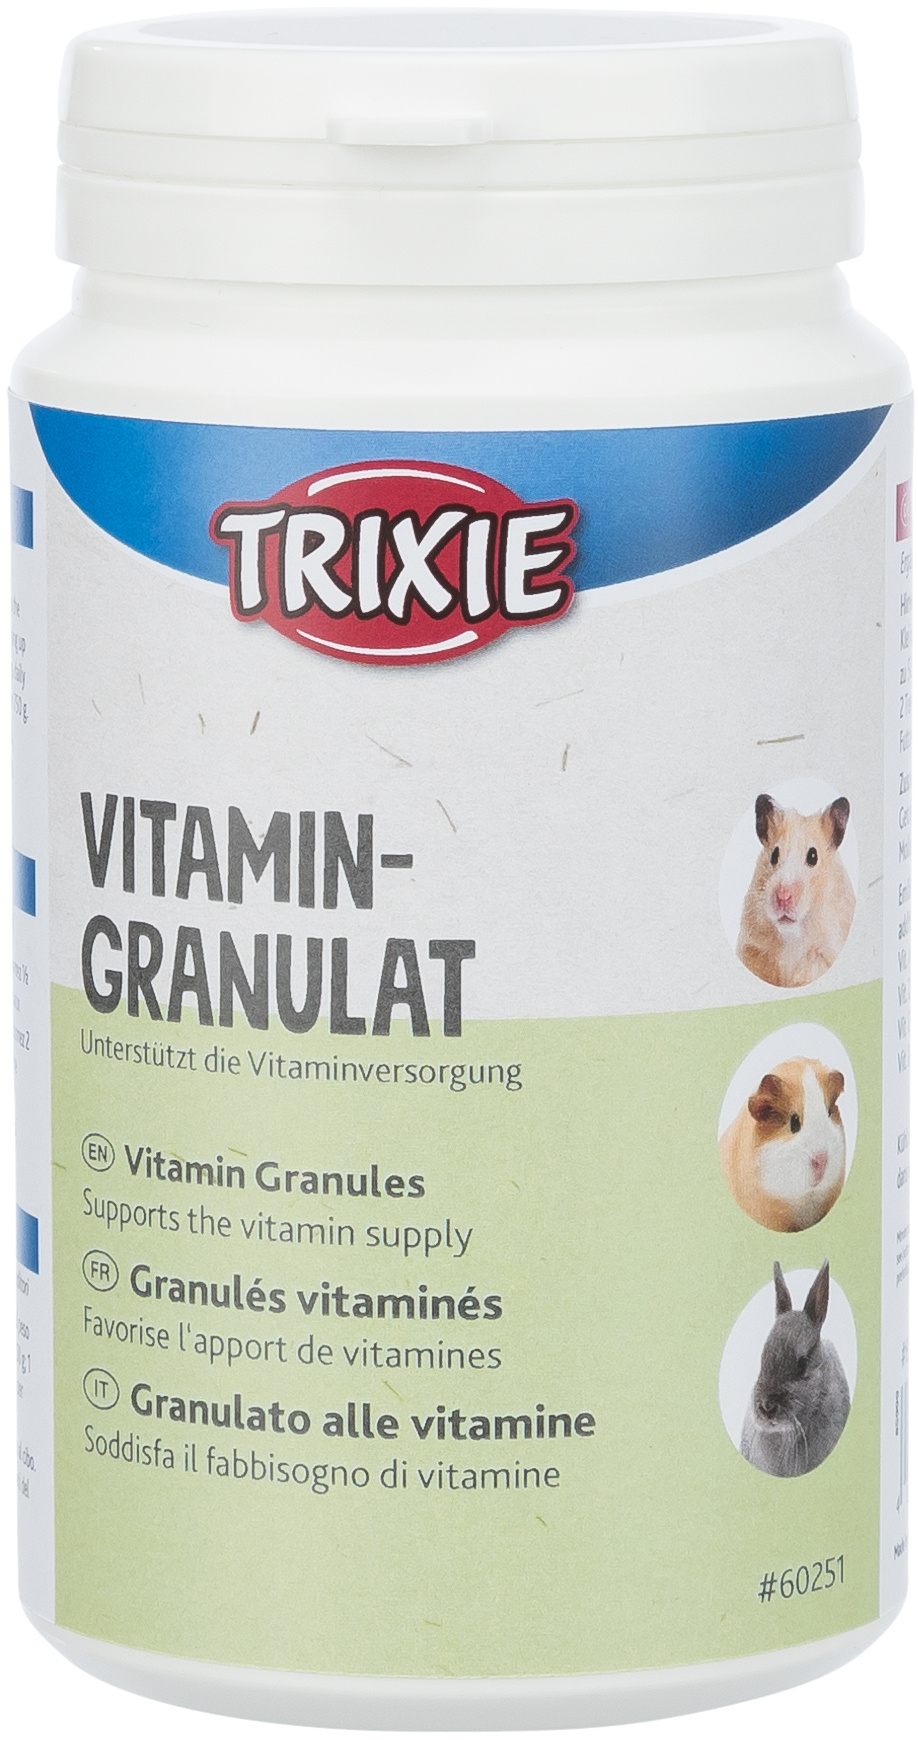 Pellet vitaminici per conigli e piccoli roditori